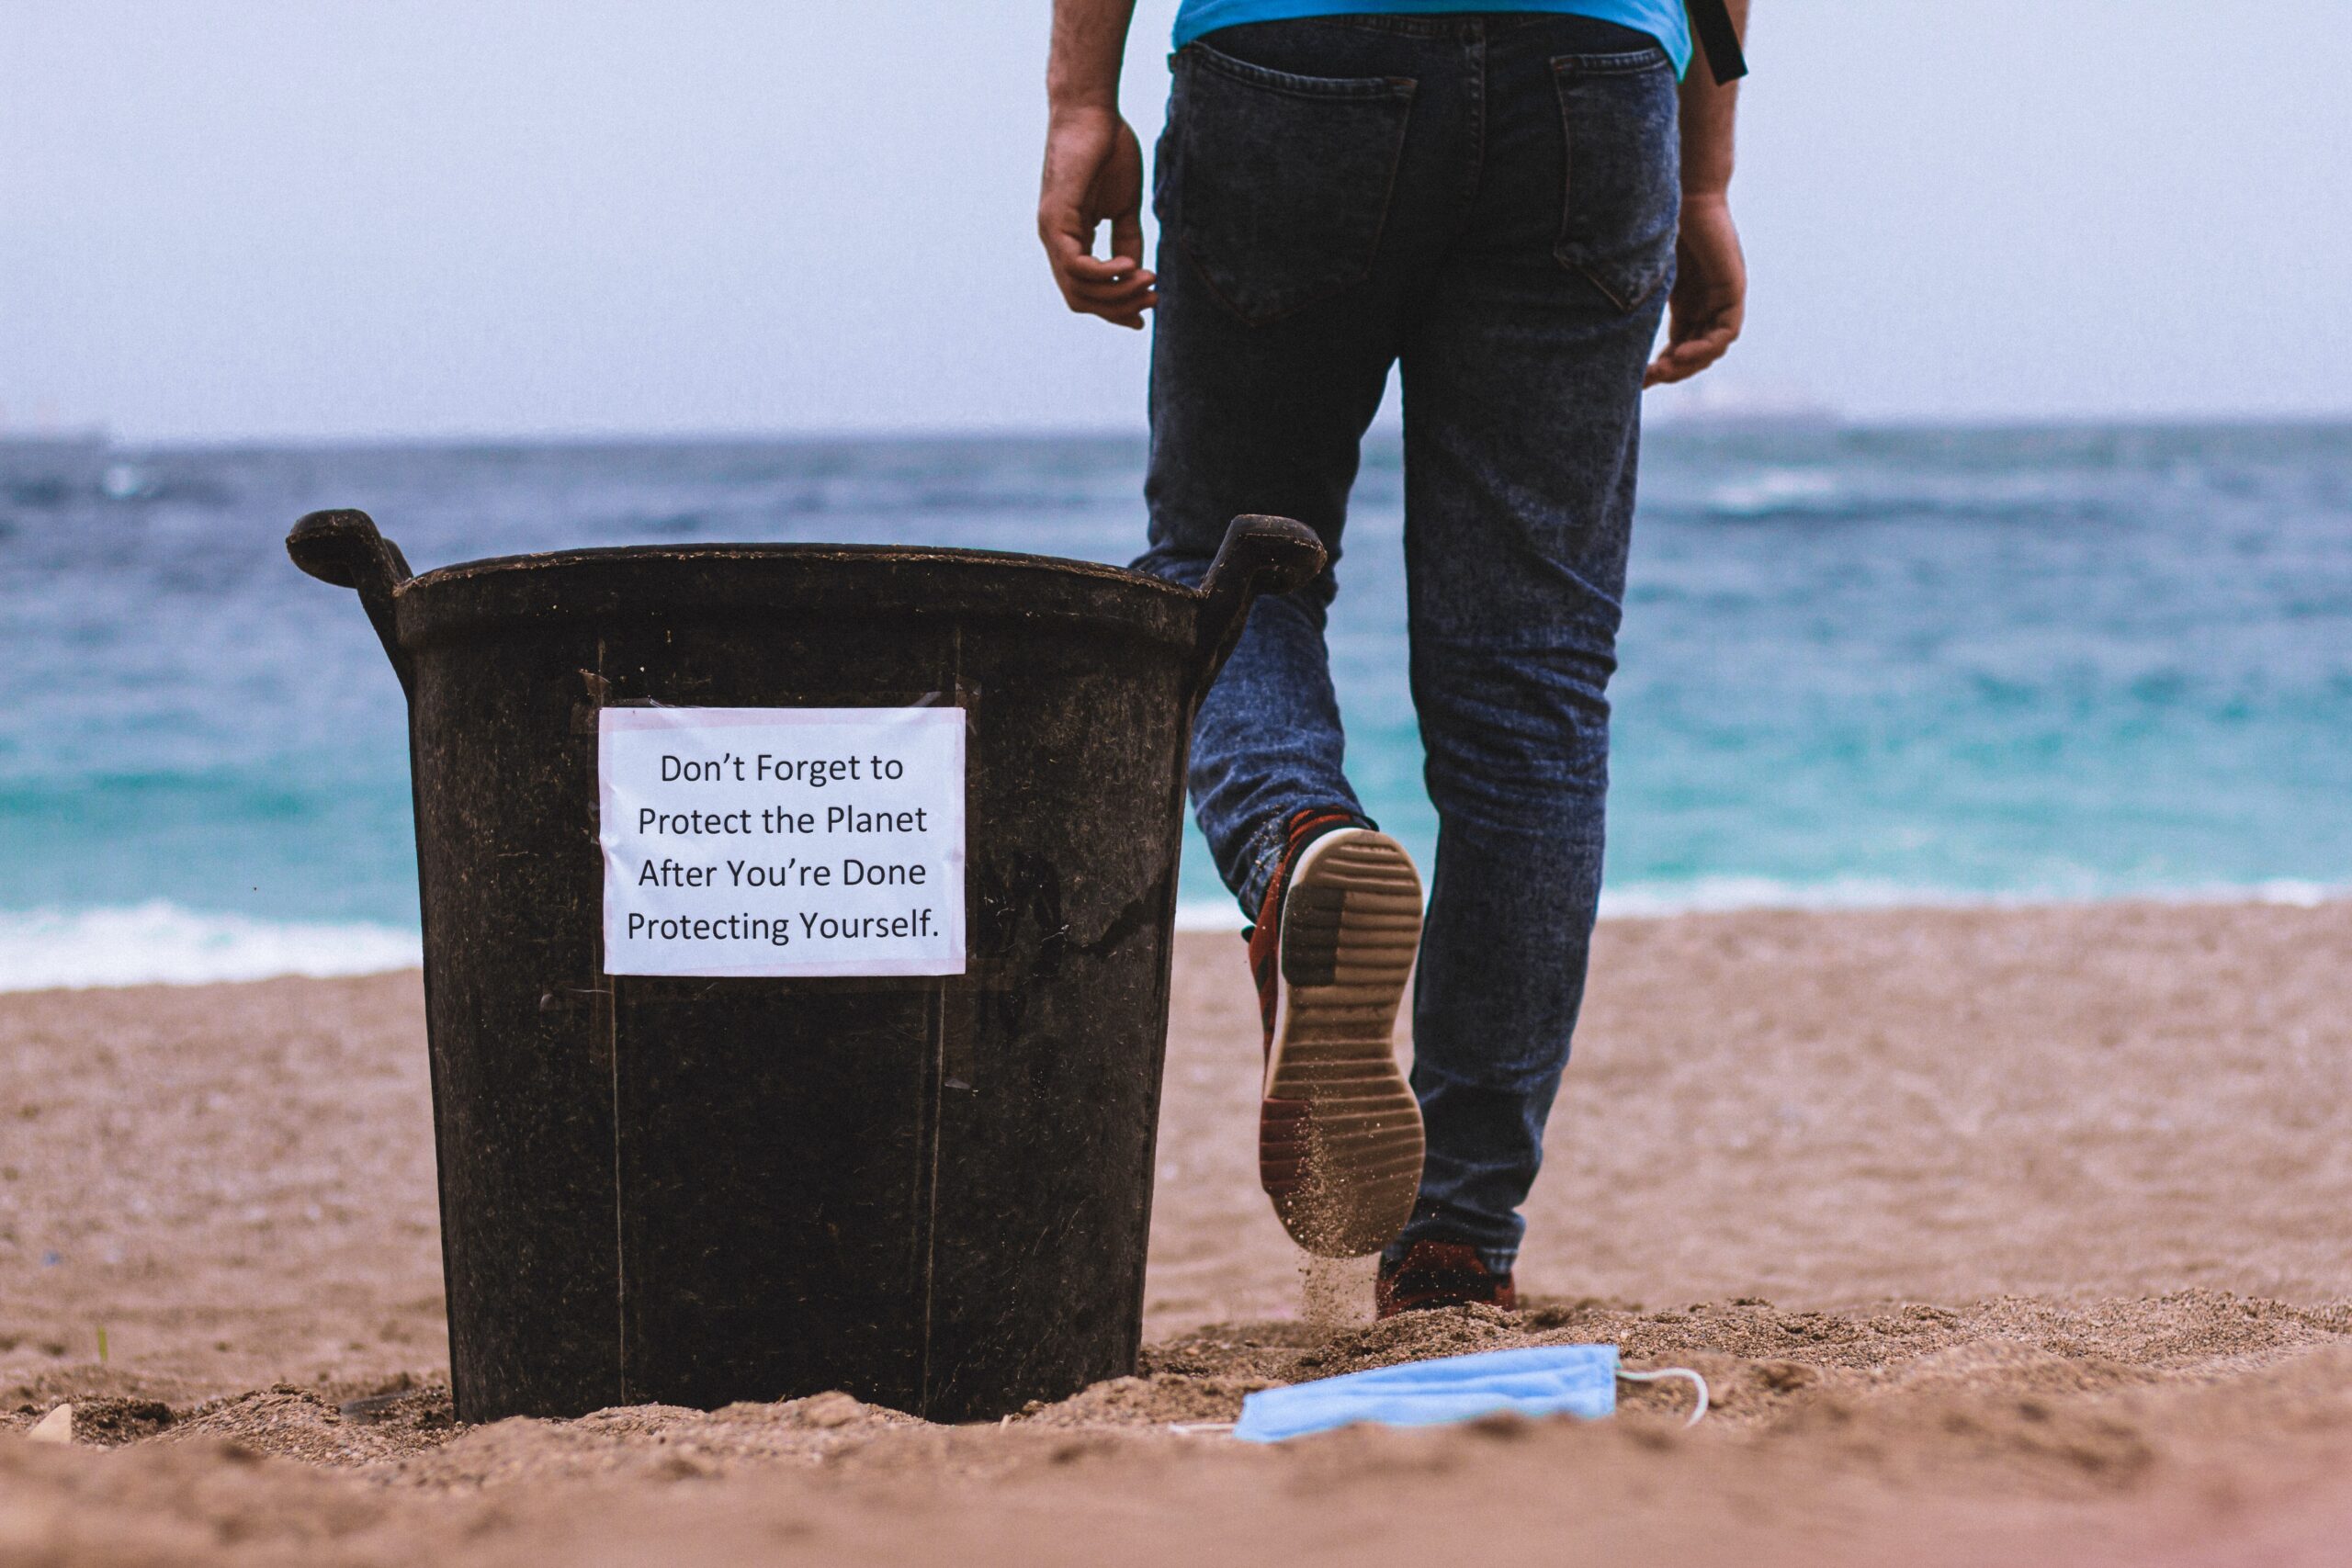 Uitdagend idee pakt goed uit en zorgt voor betere scheiding afval op het strand